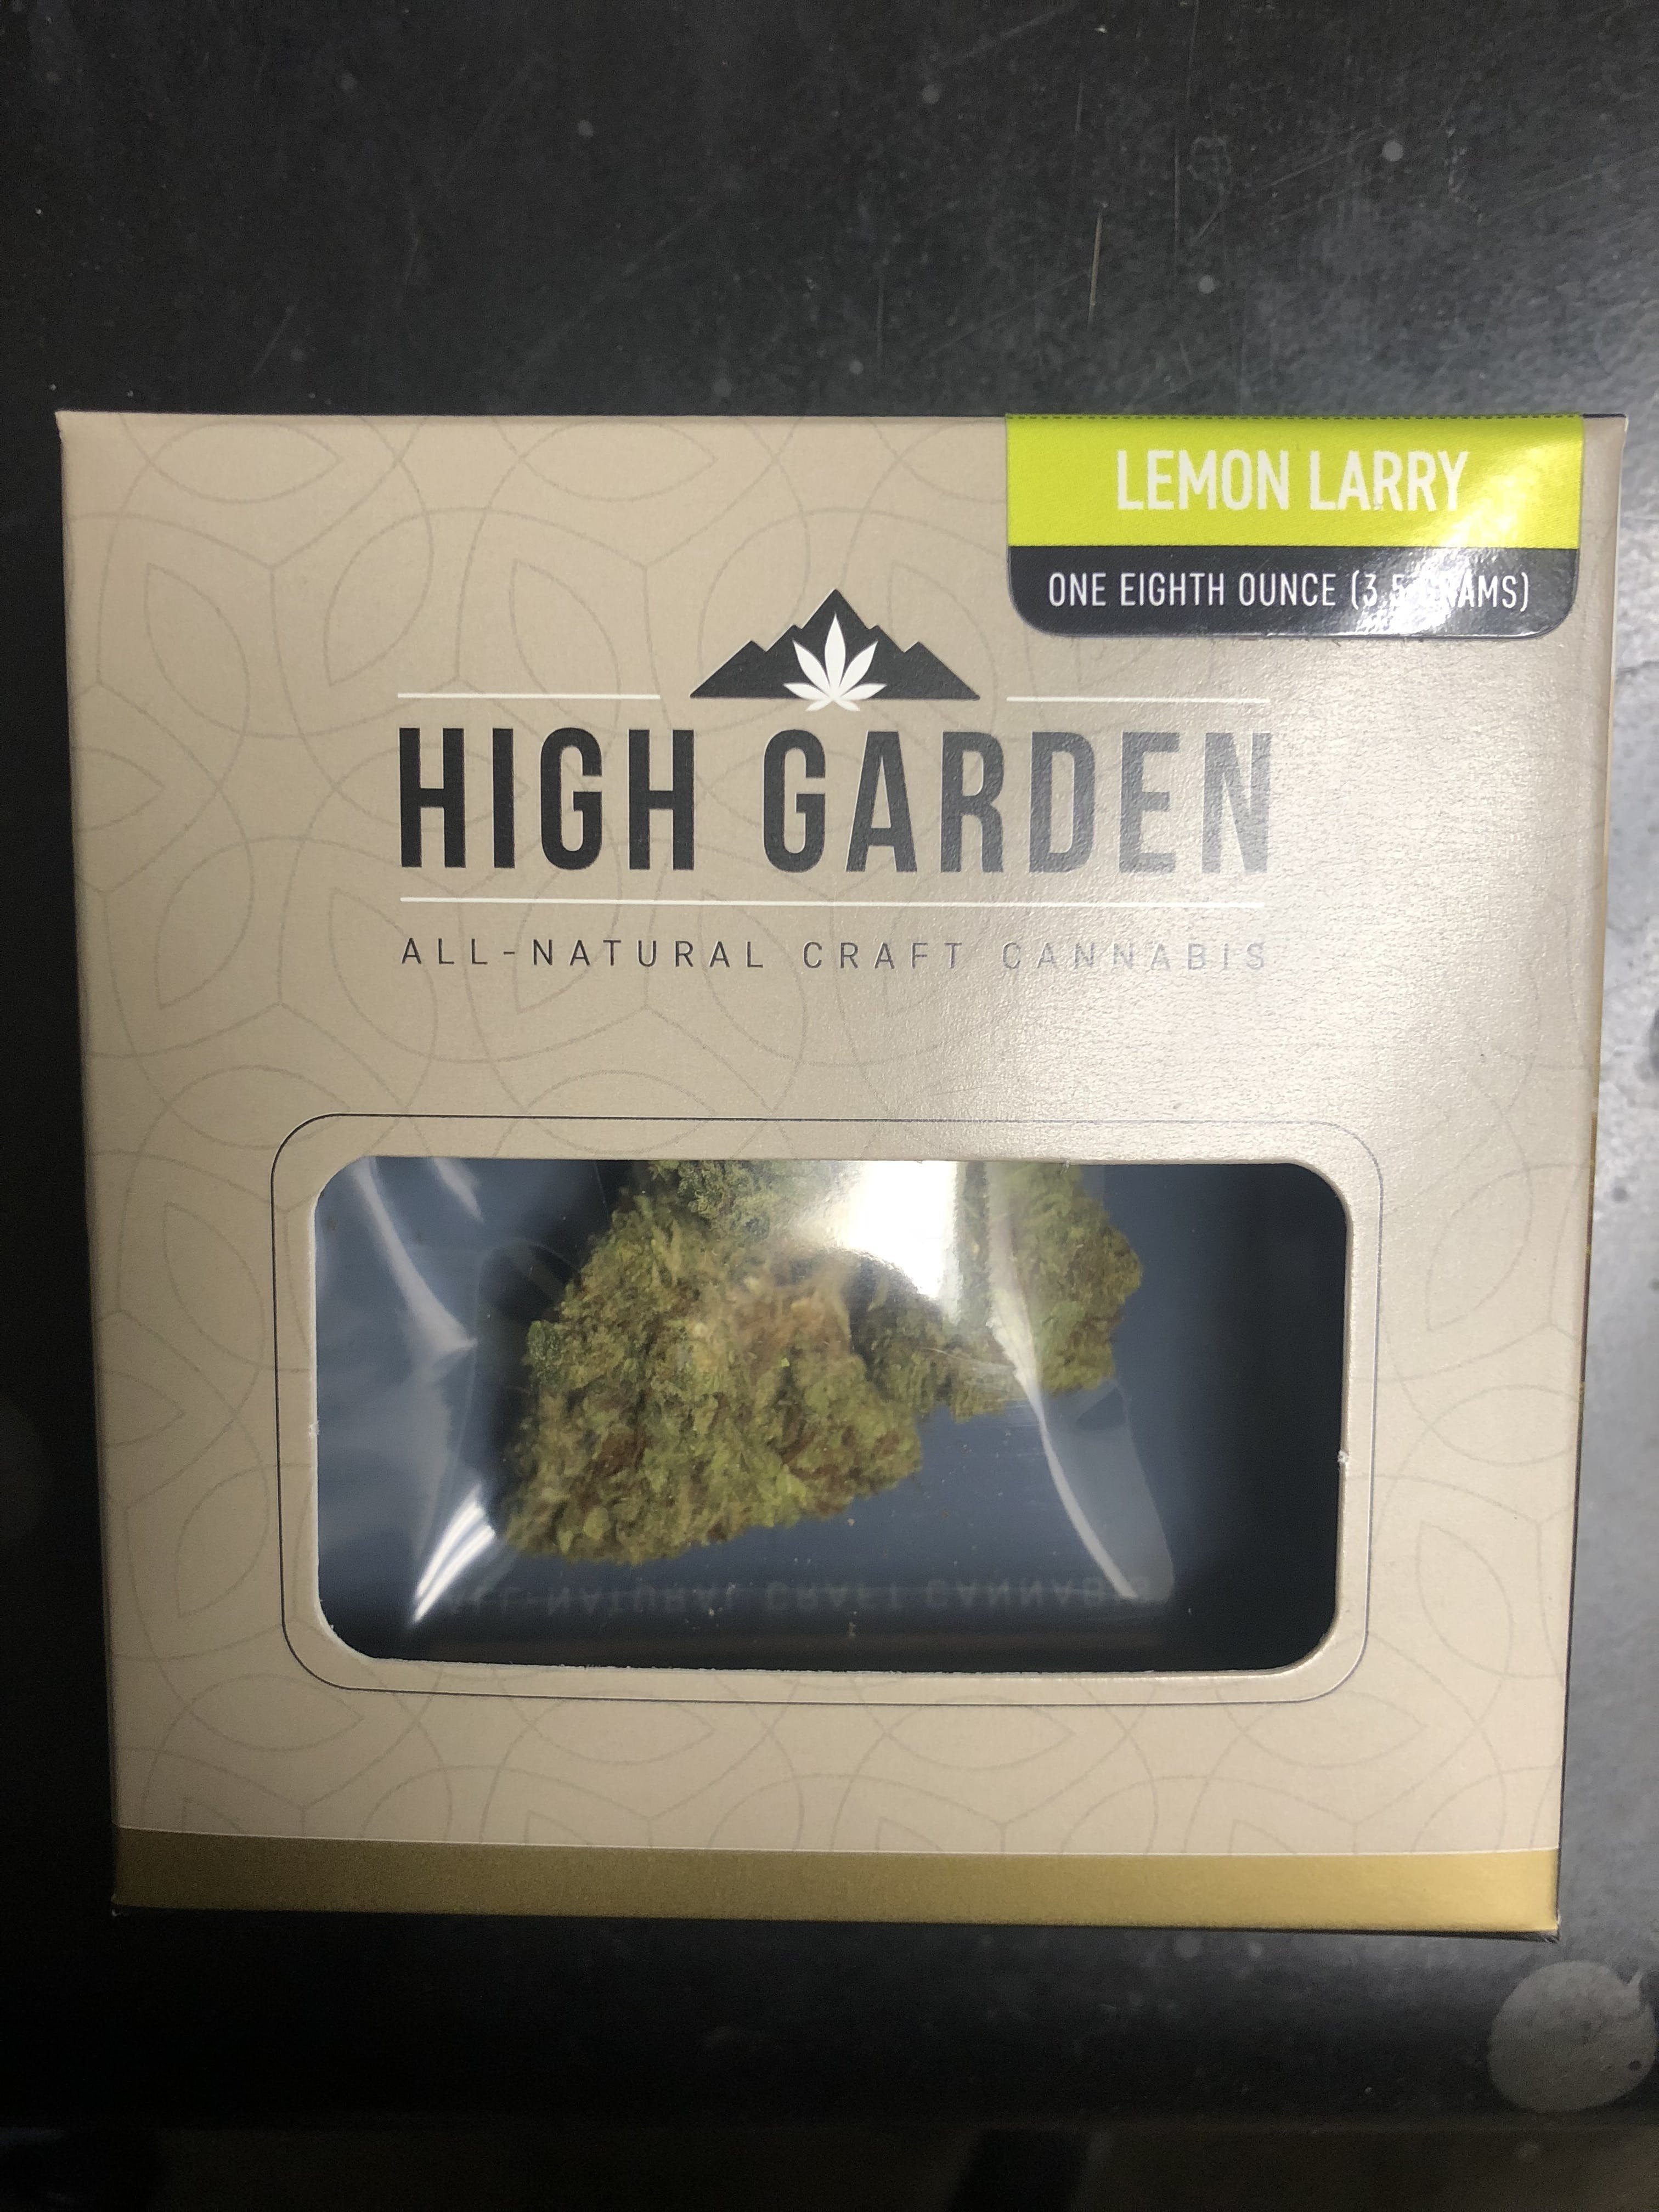 High Garden - Lemon Larry